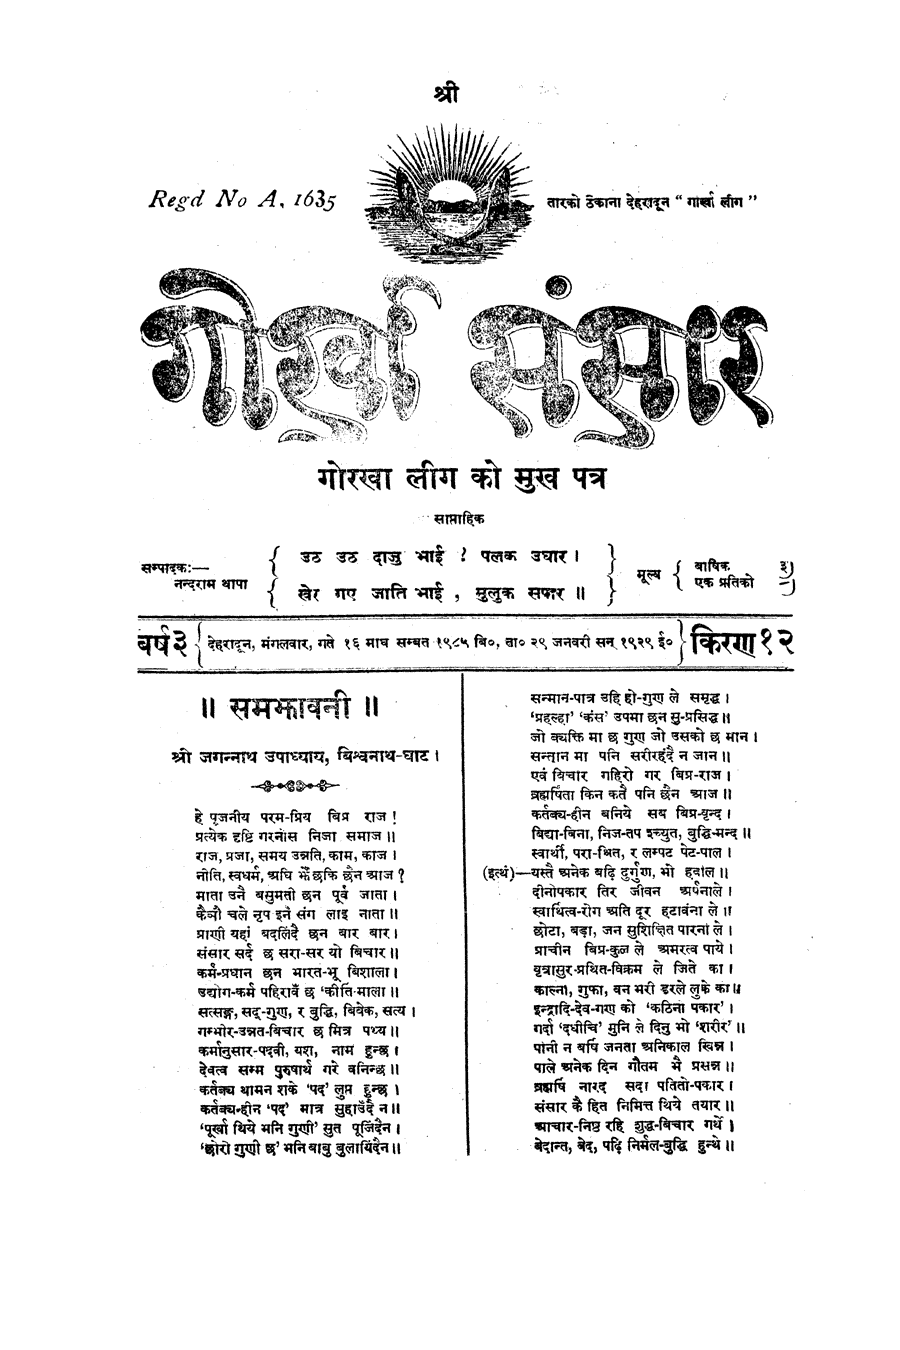 Gorkha Sansar, 29 Jan 1929, page 1